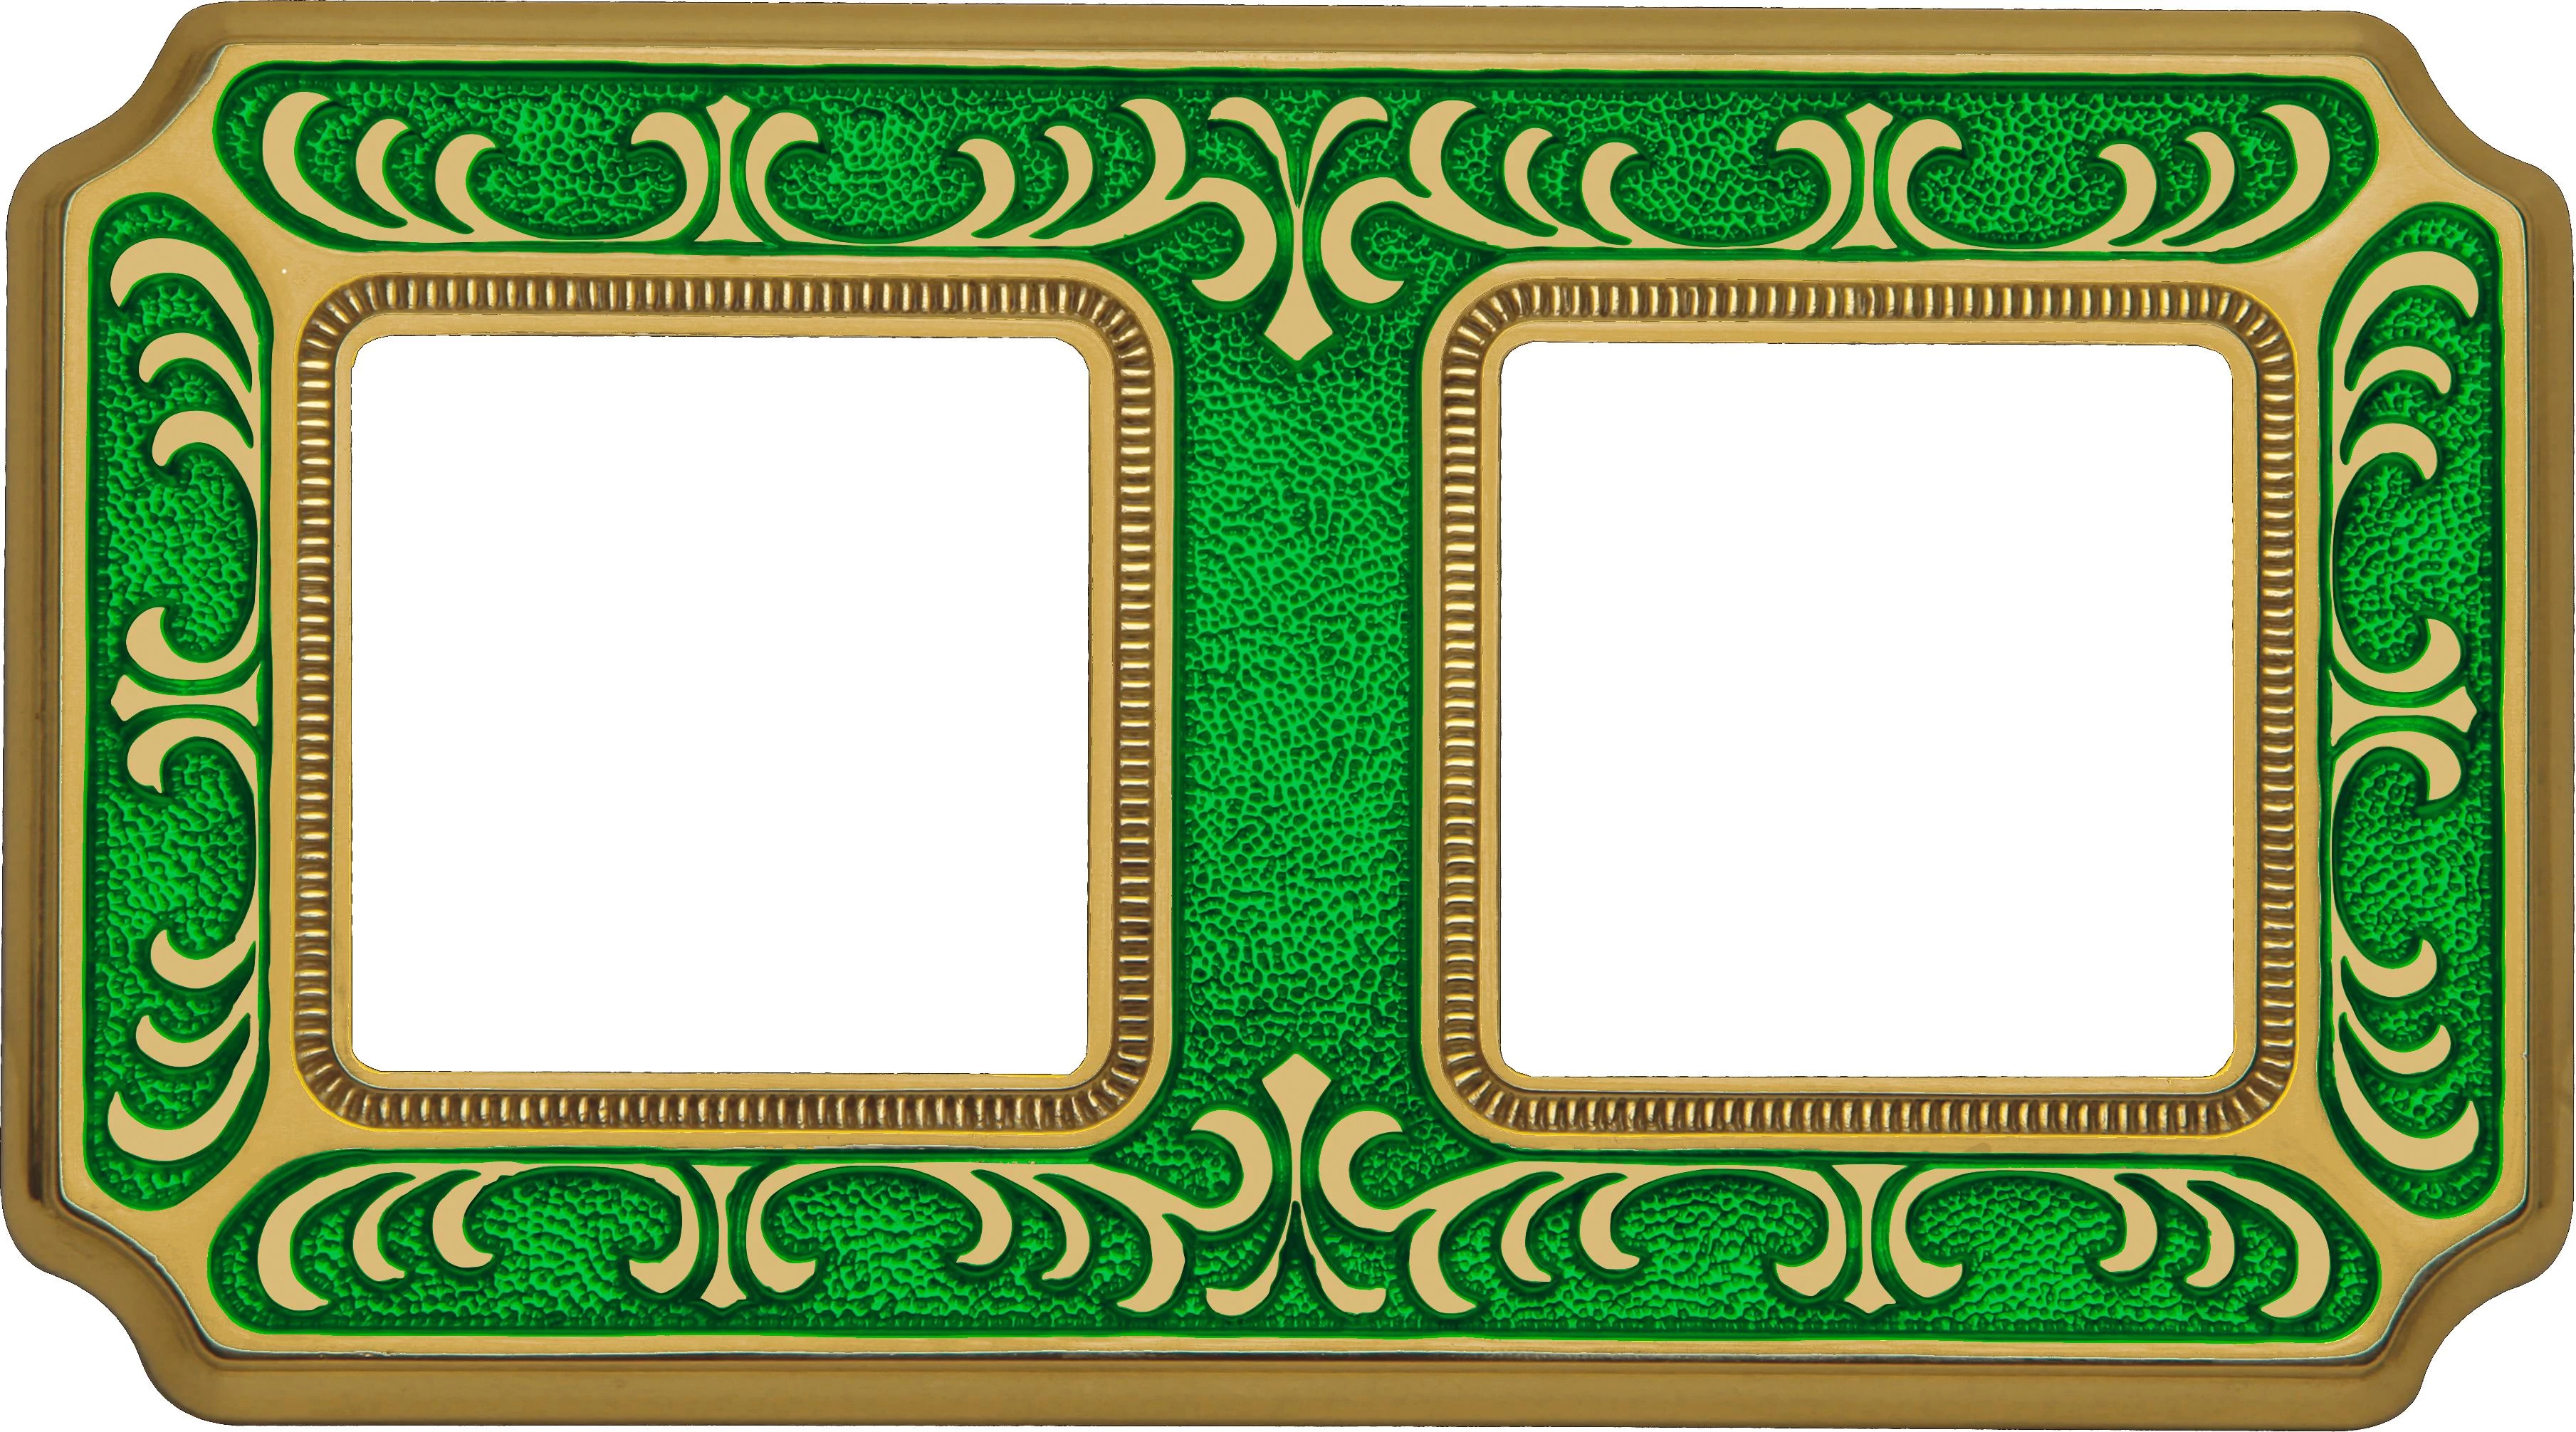  артикул FD01352VEEN название Рамка 2-ая (двойная), цвет Изумрудно-зеленый, Siena, Fede